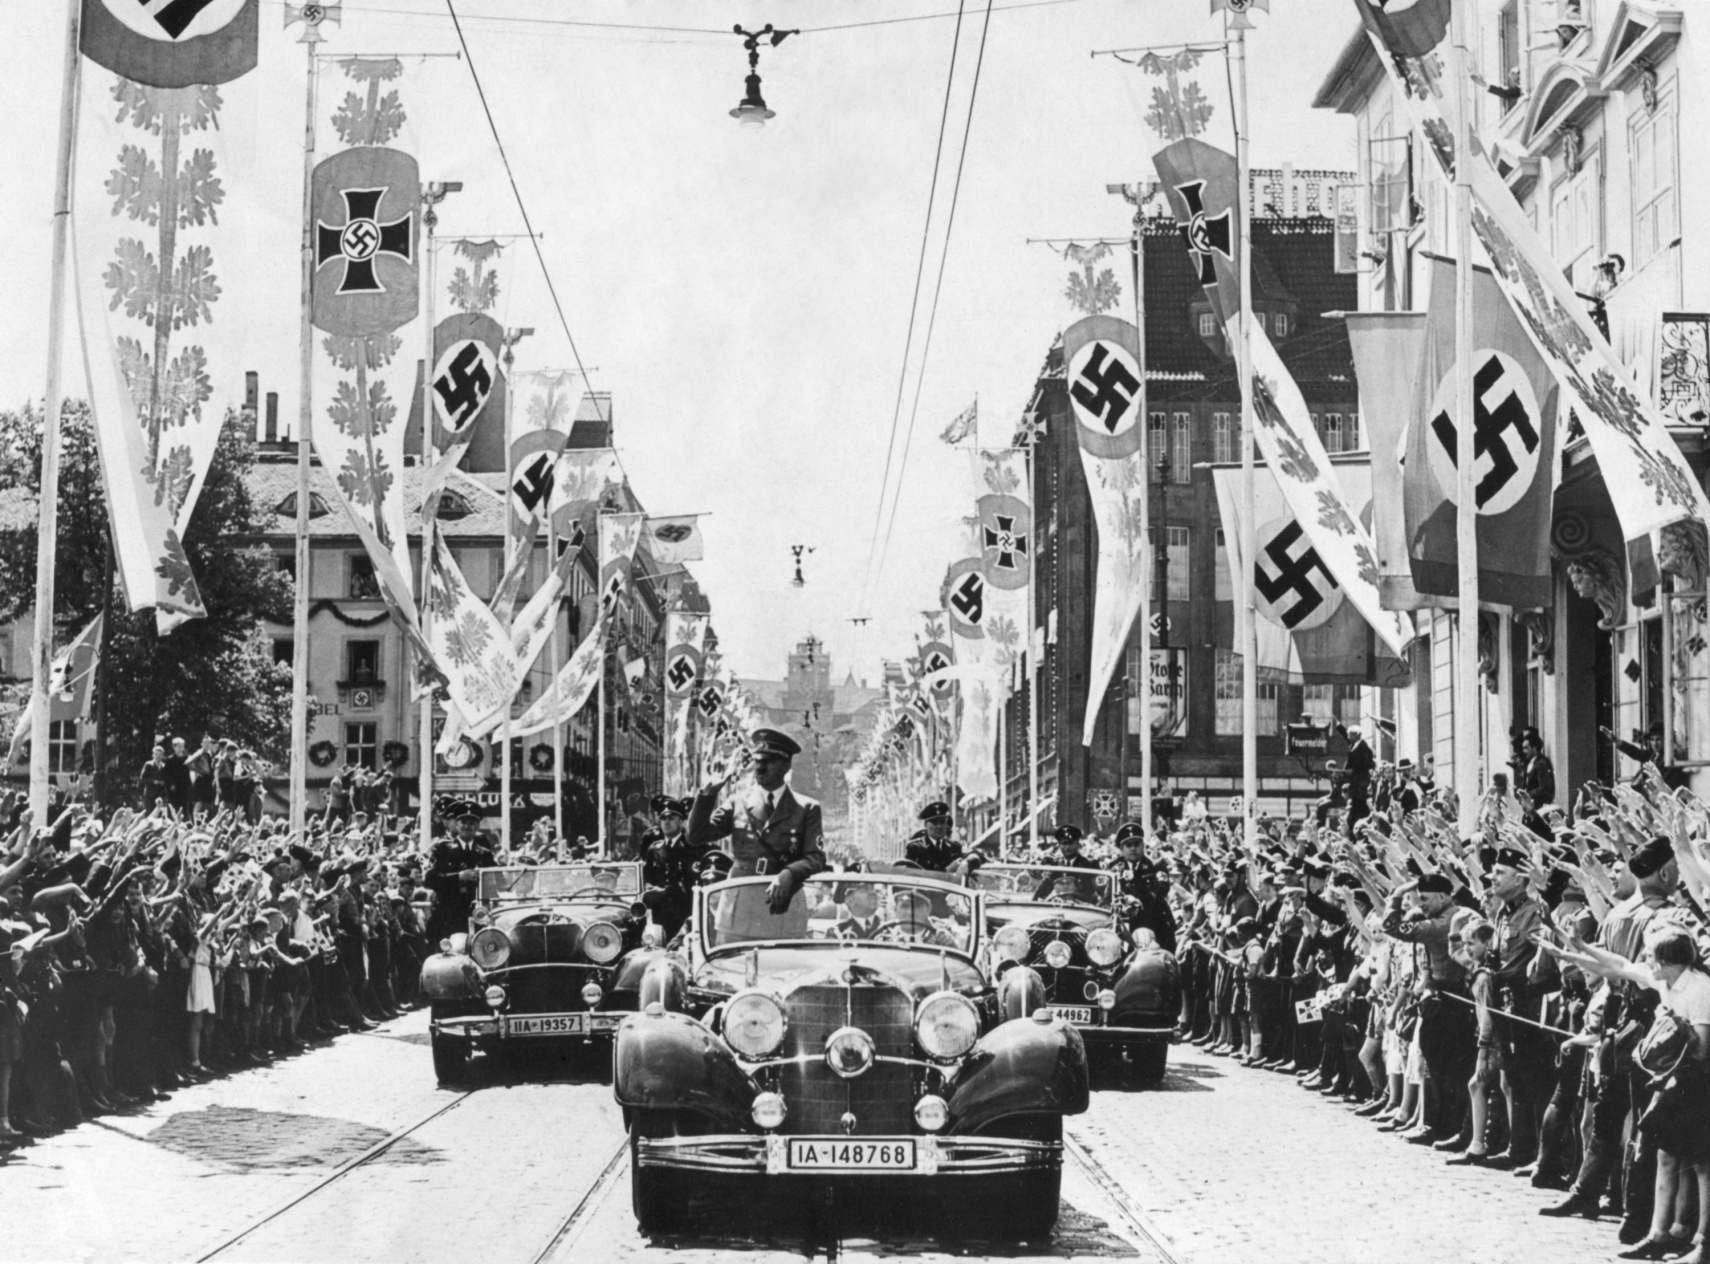 Ādolfs Hitlers parādes priekšgalā pamāja pūļiem no savas automašīnas. Ielas rotā dažādi svastikas baneri. Ca. 1934-38. Hitleram bija ērts, bet neīsts iemesls, kāpēc par zīmotni izvēlējās svastikas simbolu. Otrajā tūkstošgadē to izmantoja Indijas āriešu nomadi. Nacistu teorijā āriešiem bija vācu senči, un Hitlers secināja, ka svastika ir bijusi mūžīgi antisemītiska.